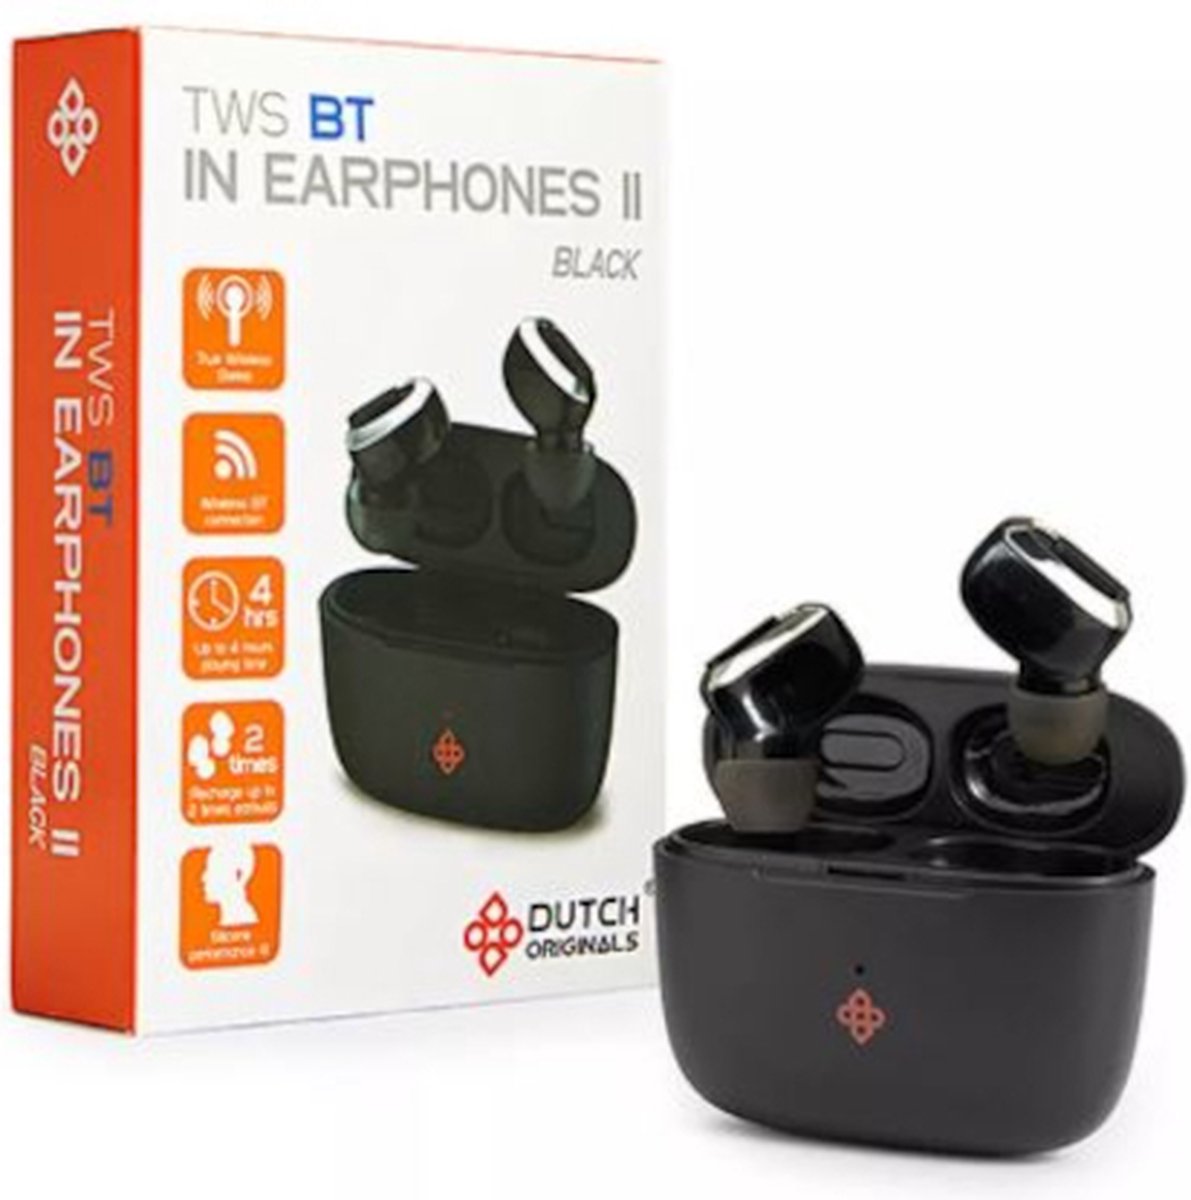 DUTCH ORIGINALS TWS BT IN EARPHONES II BLACK Volledig Draadloze Bluetooth... | bol.com